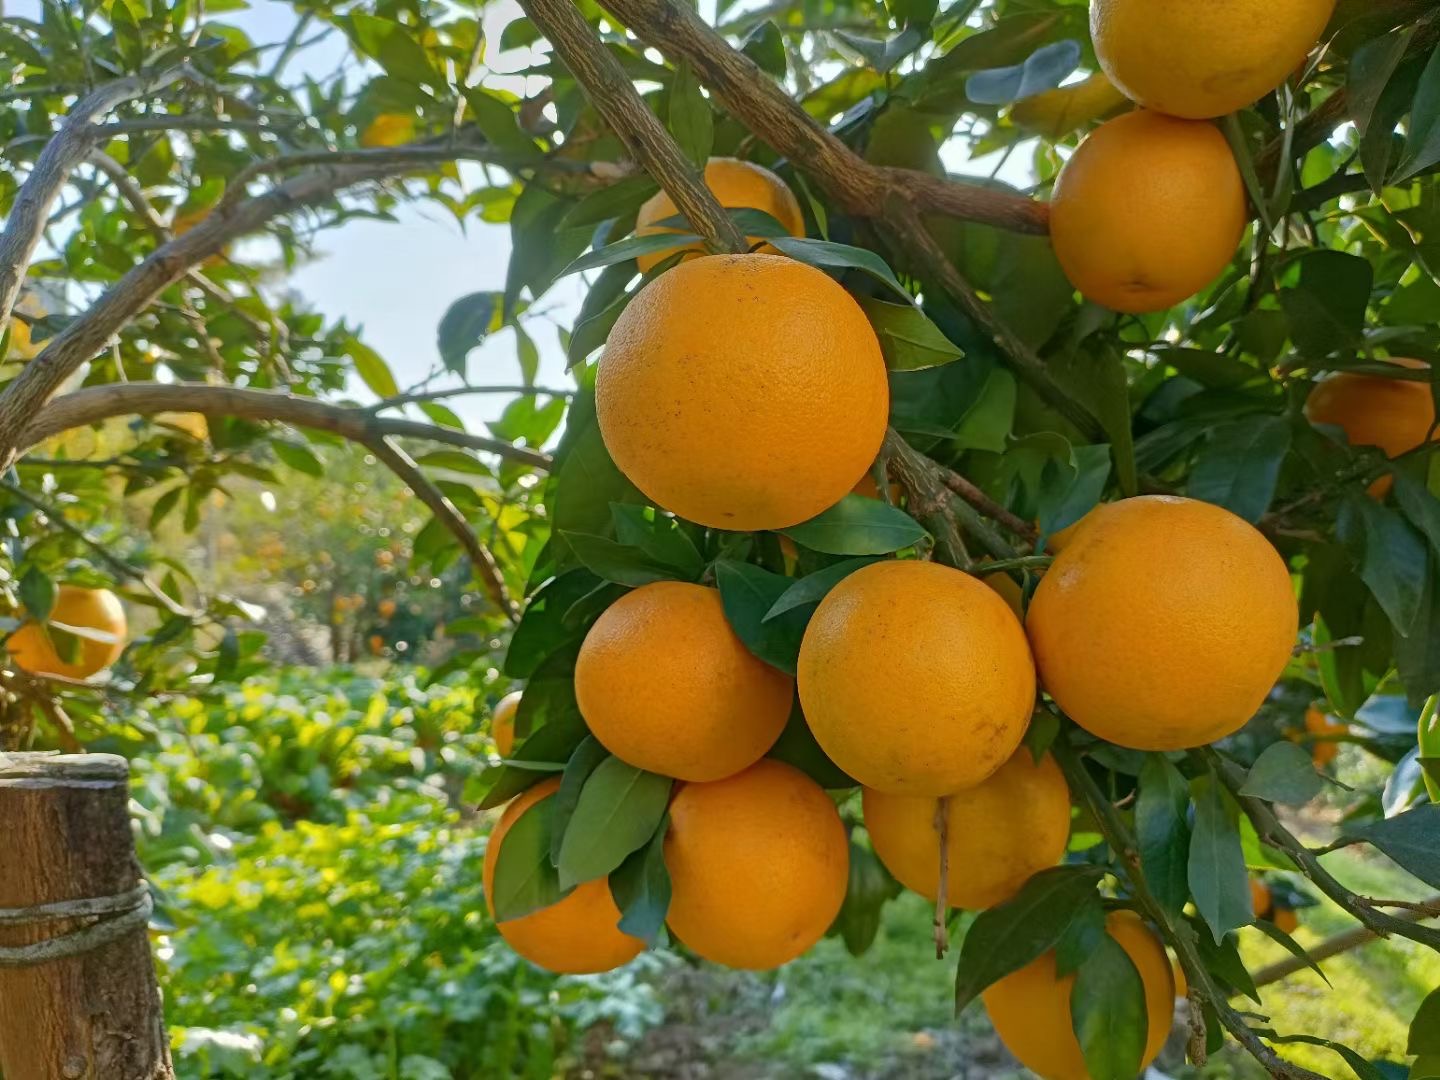 锦蜜冰糖橙品种介绍图片